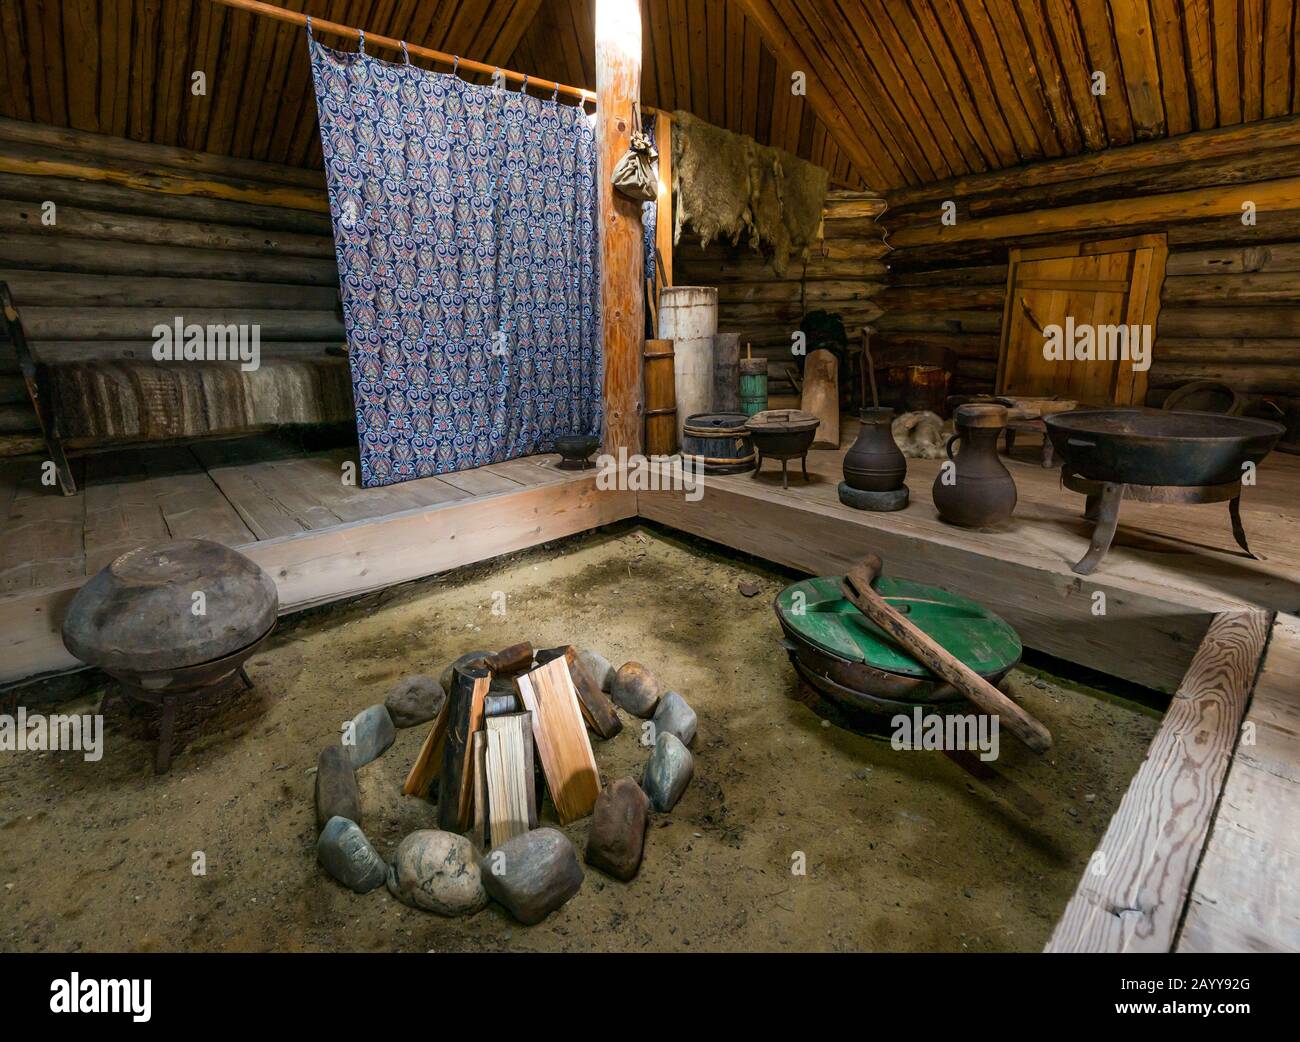 Intérieur primitif de la maison en rondins illustrant le mode de vie traditionnel, Taltsy Museum of Wooden Architecture, région d'Irkoutsk, Sibérie, Russie Banque D'Images